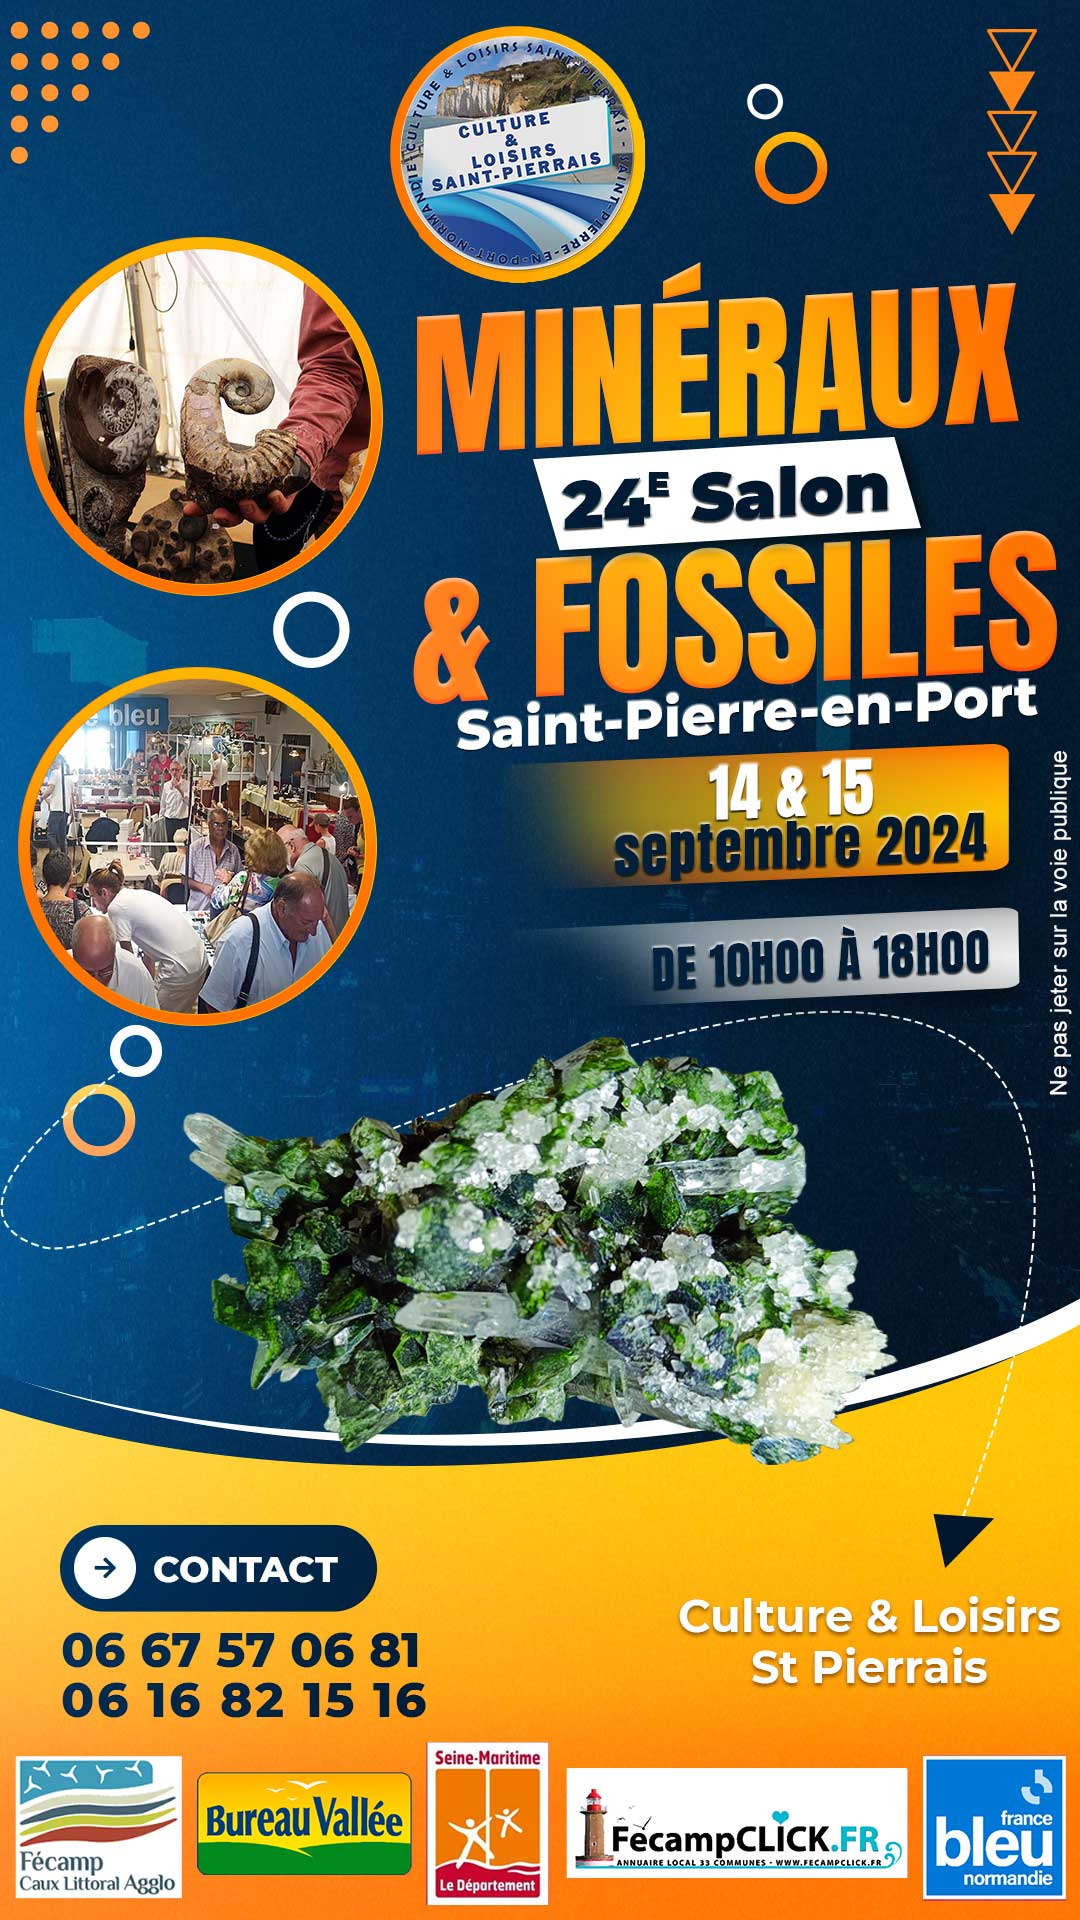 24e salon minéraux et fossiles 14 et 15 septembre 2024 Saint-Pierre-en-Port